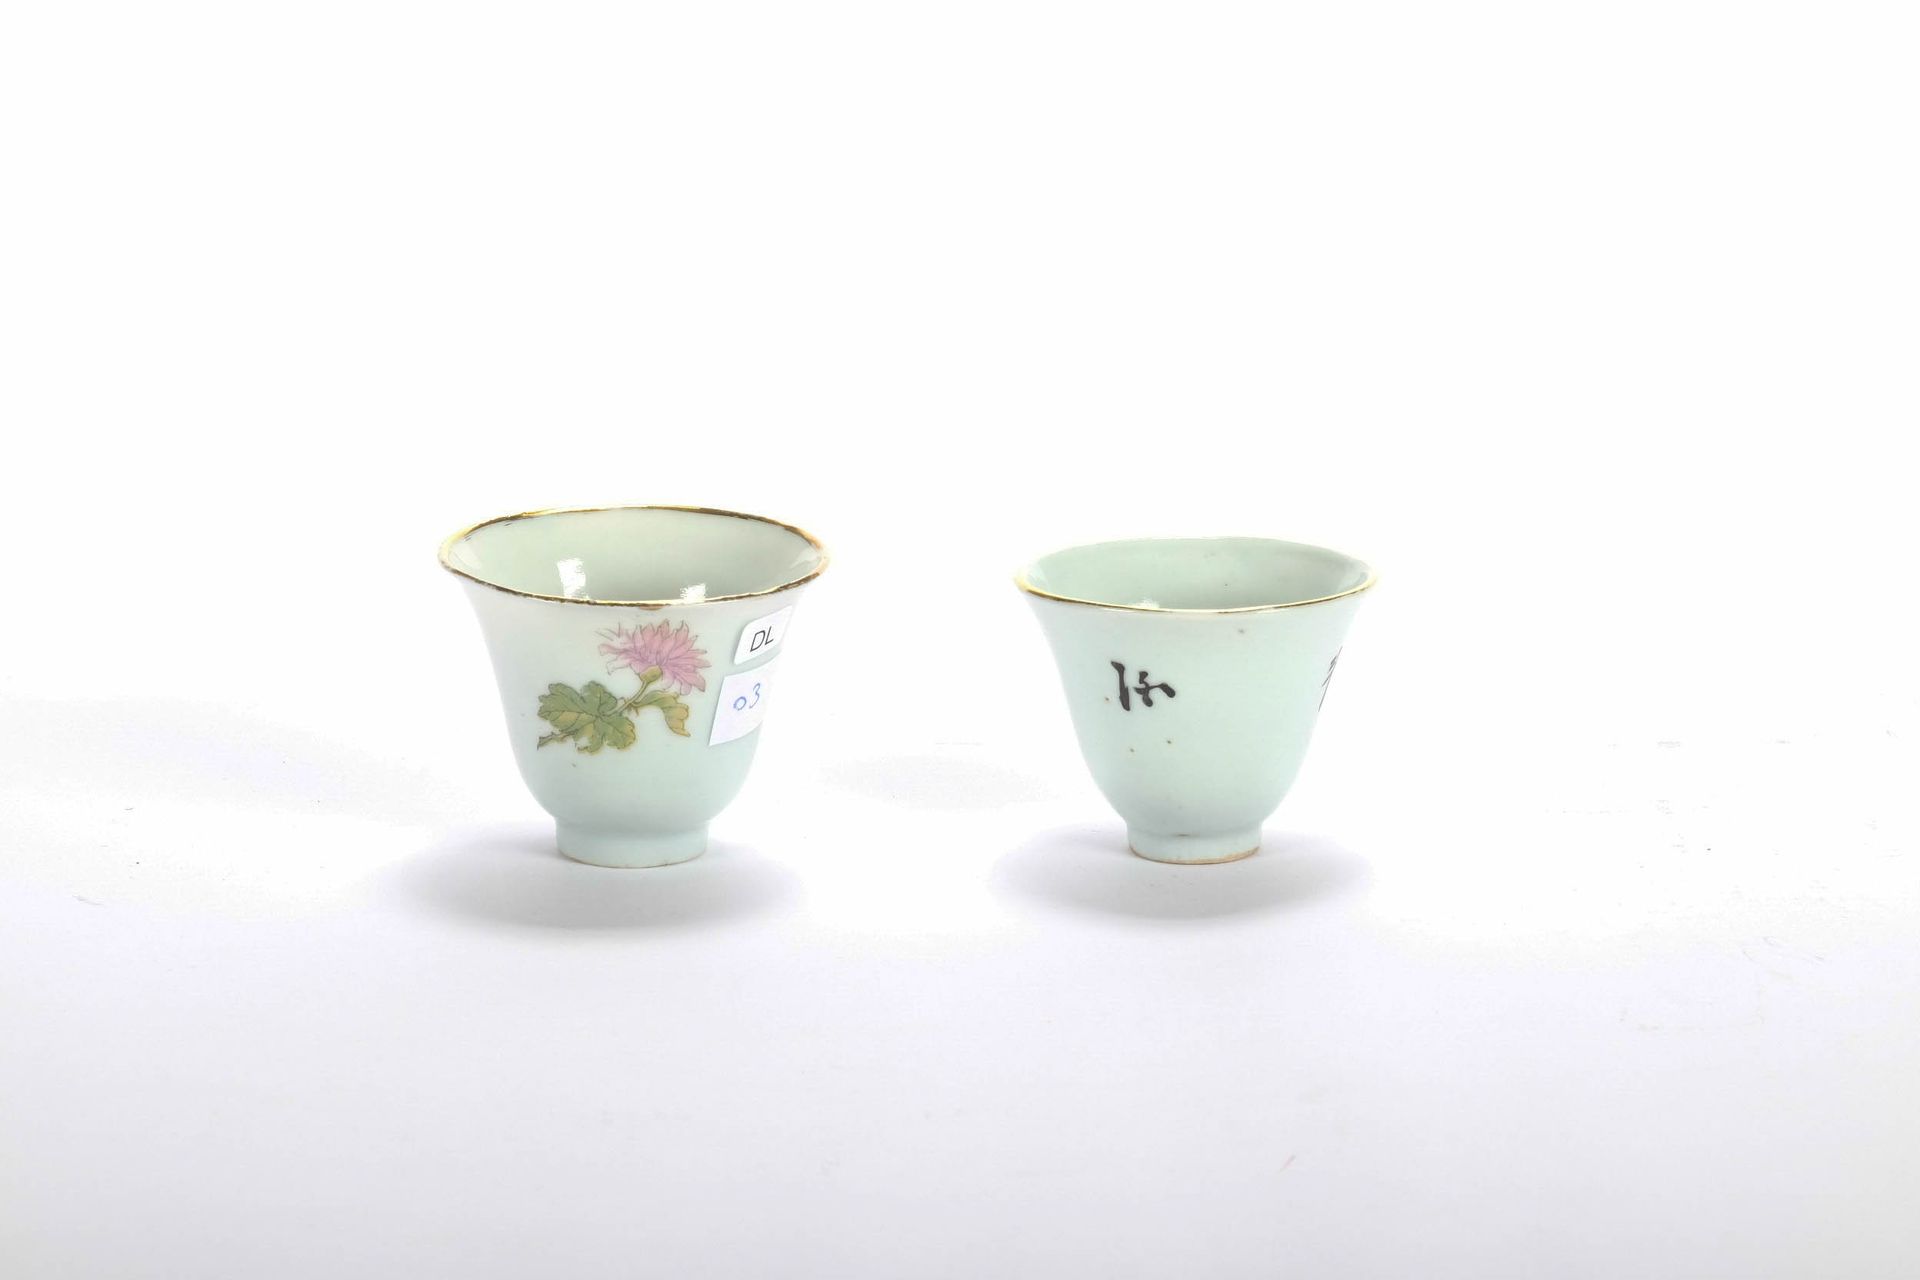 CHINE (CHINA, 中国) Lot de 2 pochons en porcelaine. Fin XIX début XX, H 5 cm.